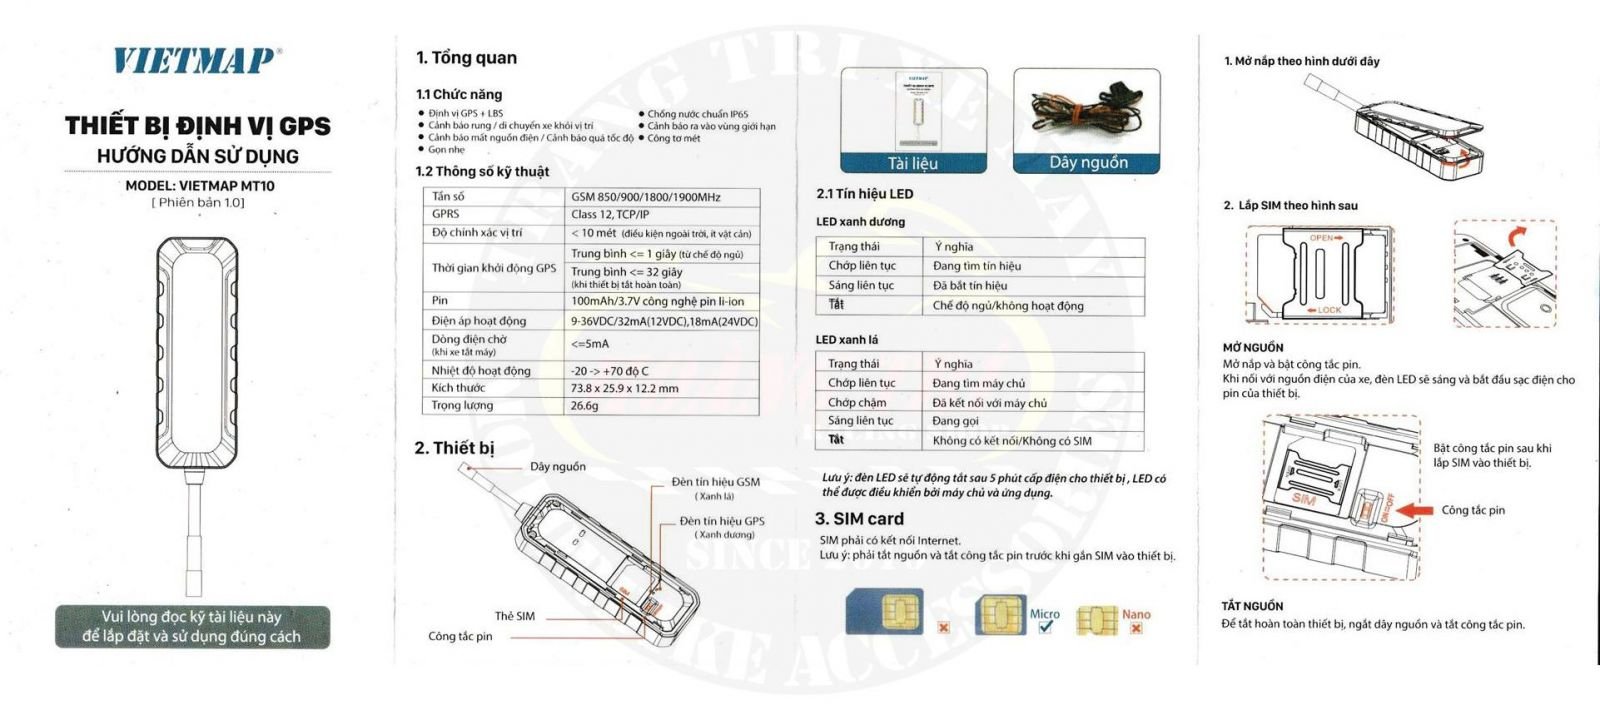 Tài liệu hướng dẫn có trong hộp thiết bị định vị xe máy VietMap MT10